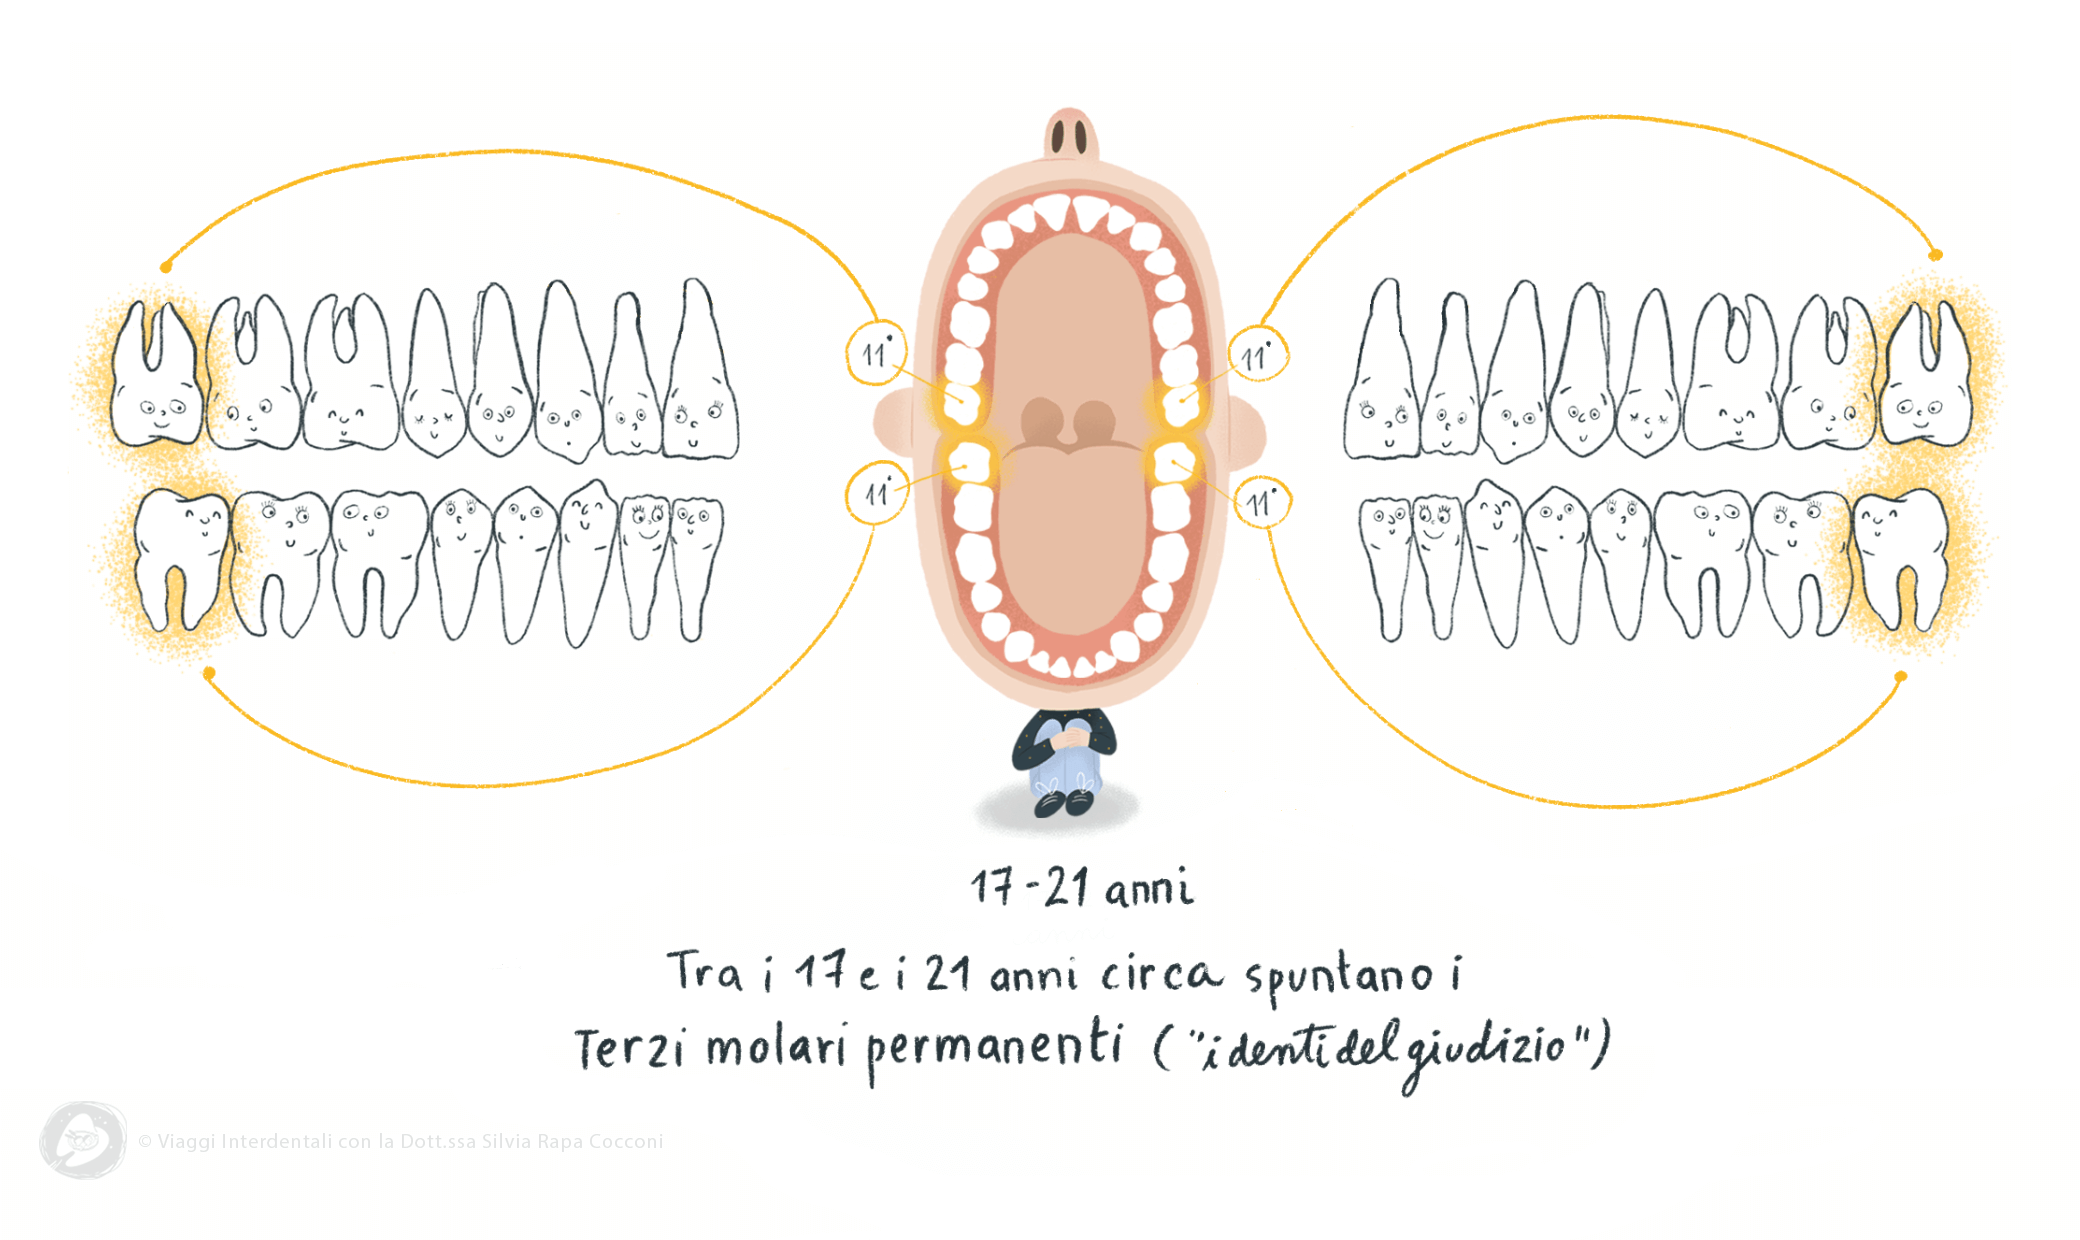 Tra i 17 e 21 anni spuntano i terzi molari permanenti ovvero i denti del giudizio - Viaggi Interdentali